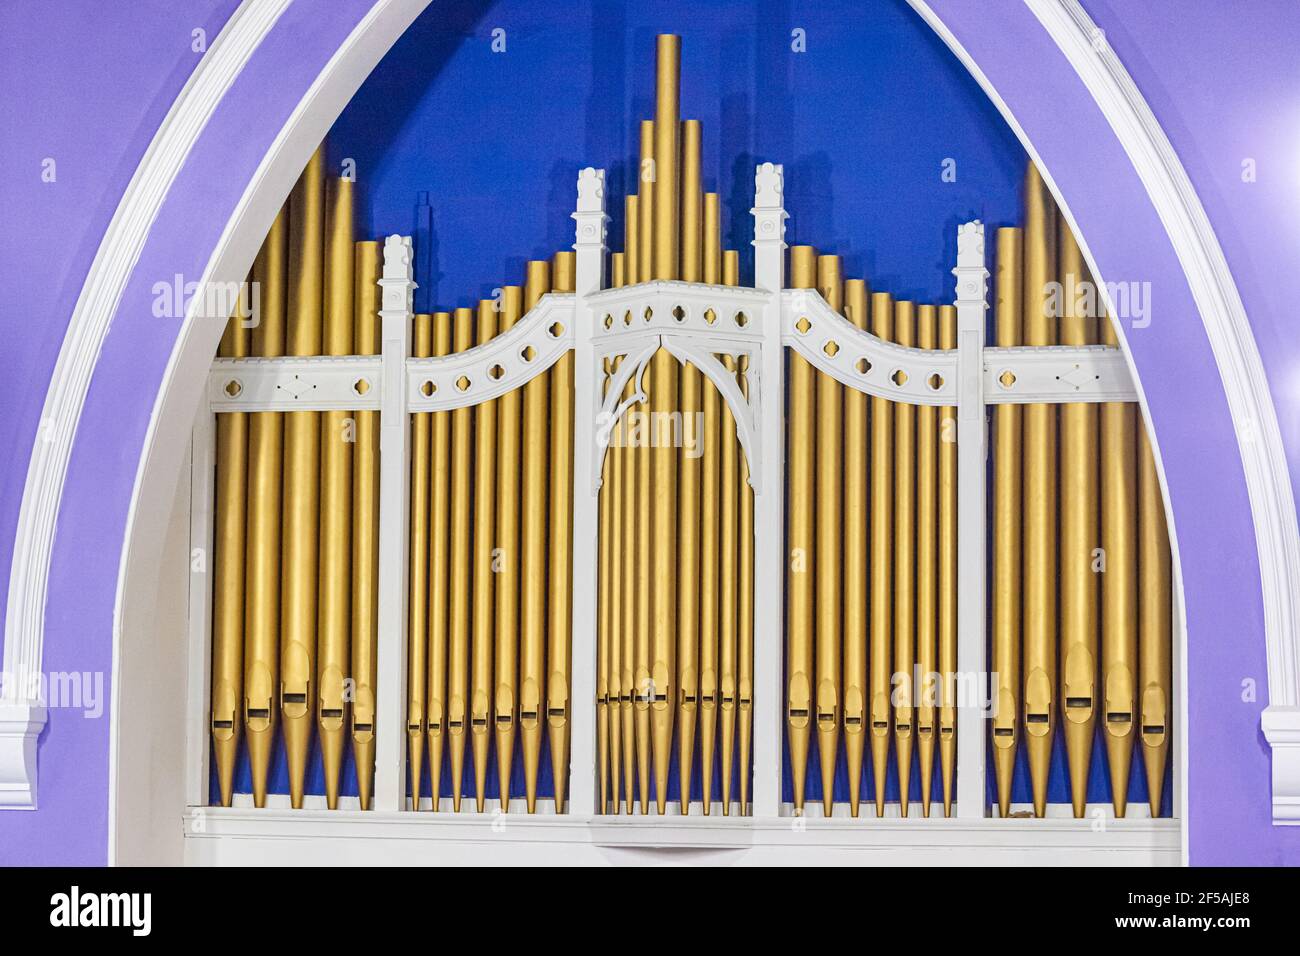 Tubi dipinti in oro su un piccolo organo della chiesa. Foto Stock